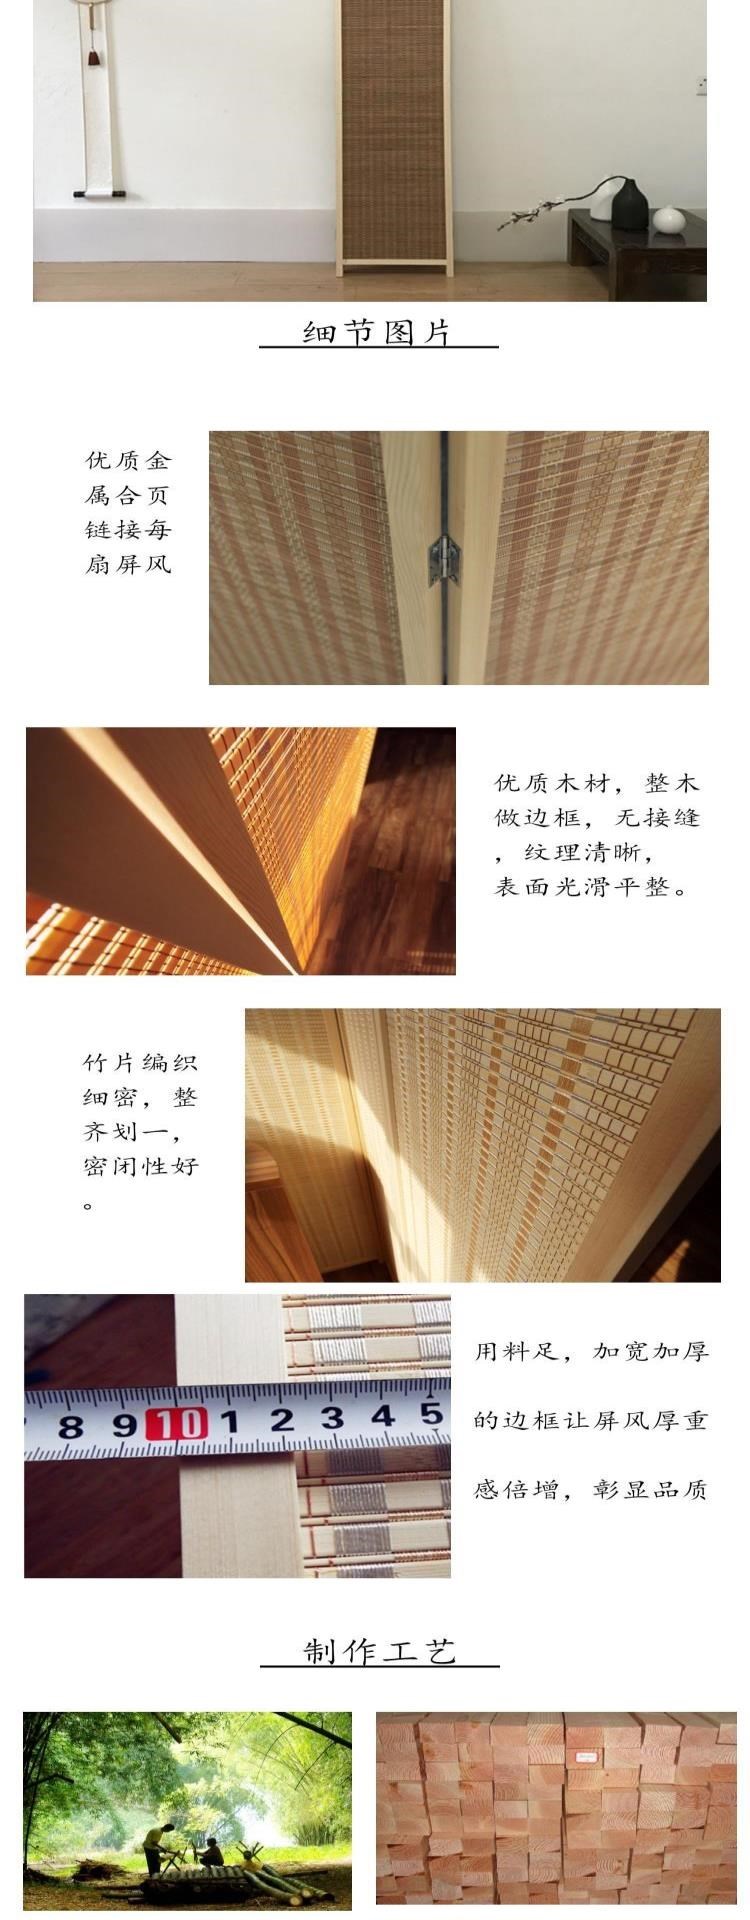 Vách ngăn màn hình gấp màn phong cách Nhật Bản lối vào nhà hàng khách hàng vách ngăn màn hình gấp màn ban công Màn tre đan bằng gỗ trong nhà - Màn hình / Cửa sổ